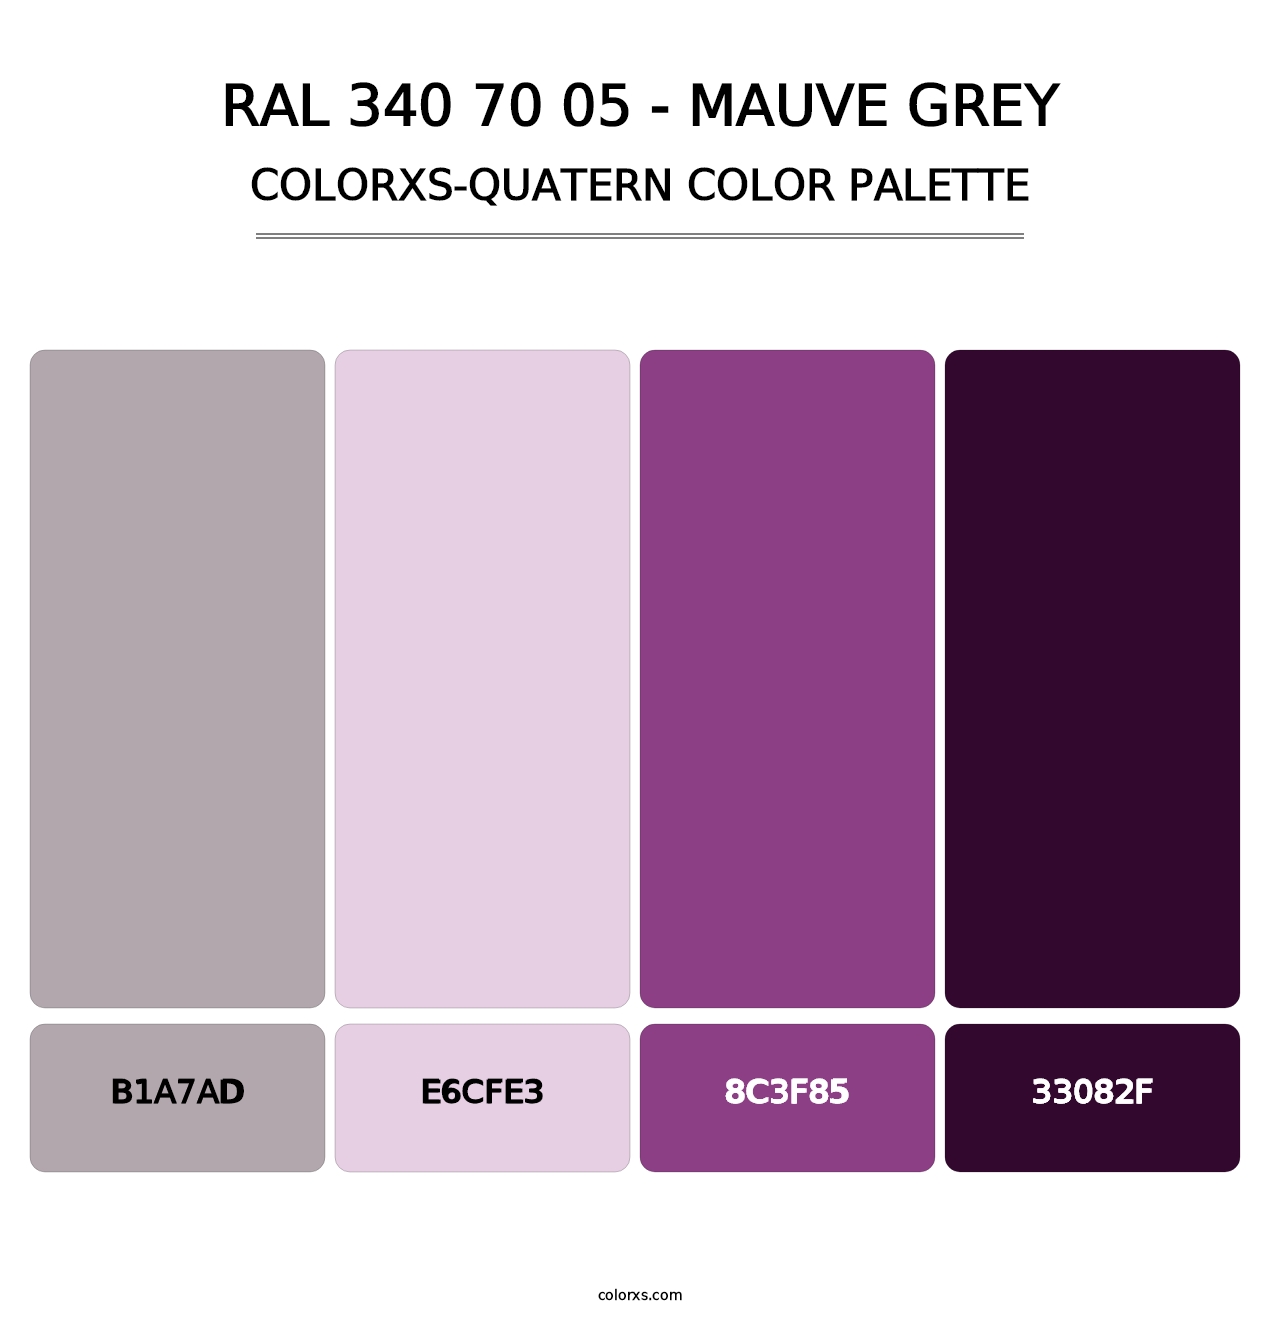 RAL 340 70 05 - Mauve Grey - Colorxs Quatern Palette